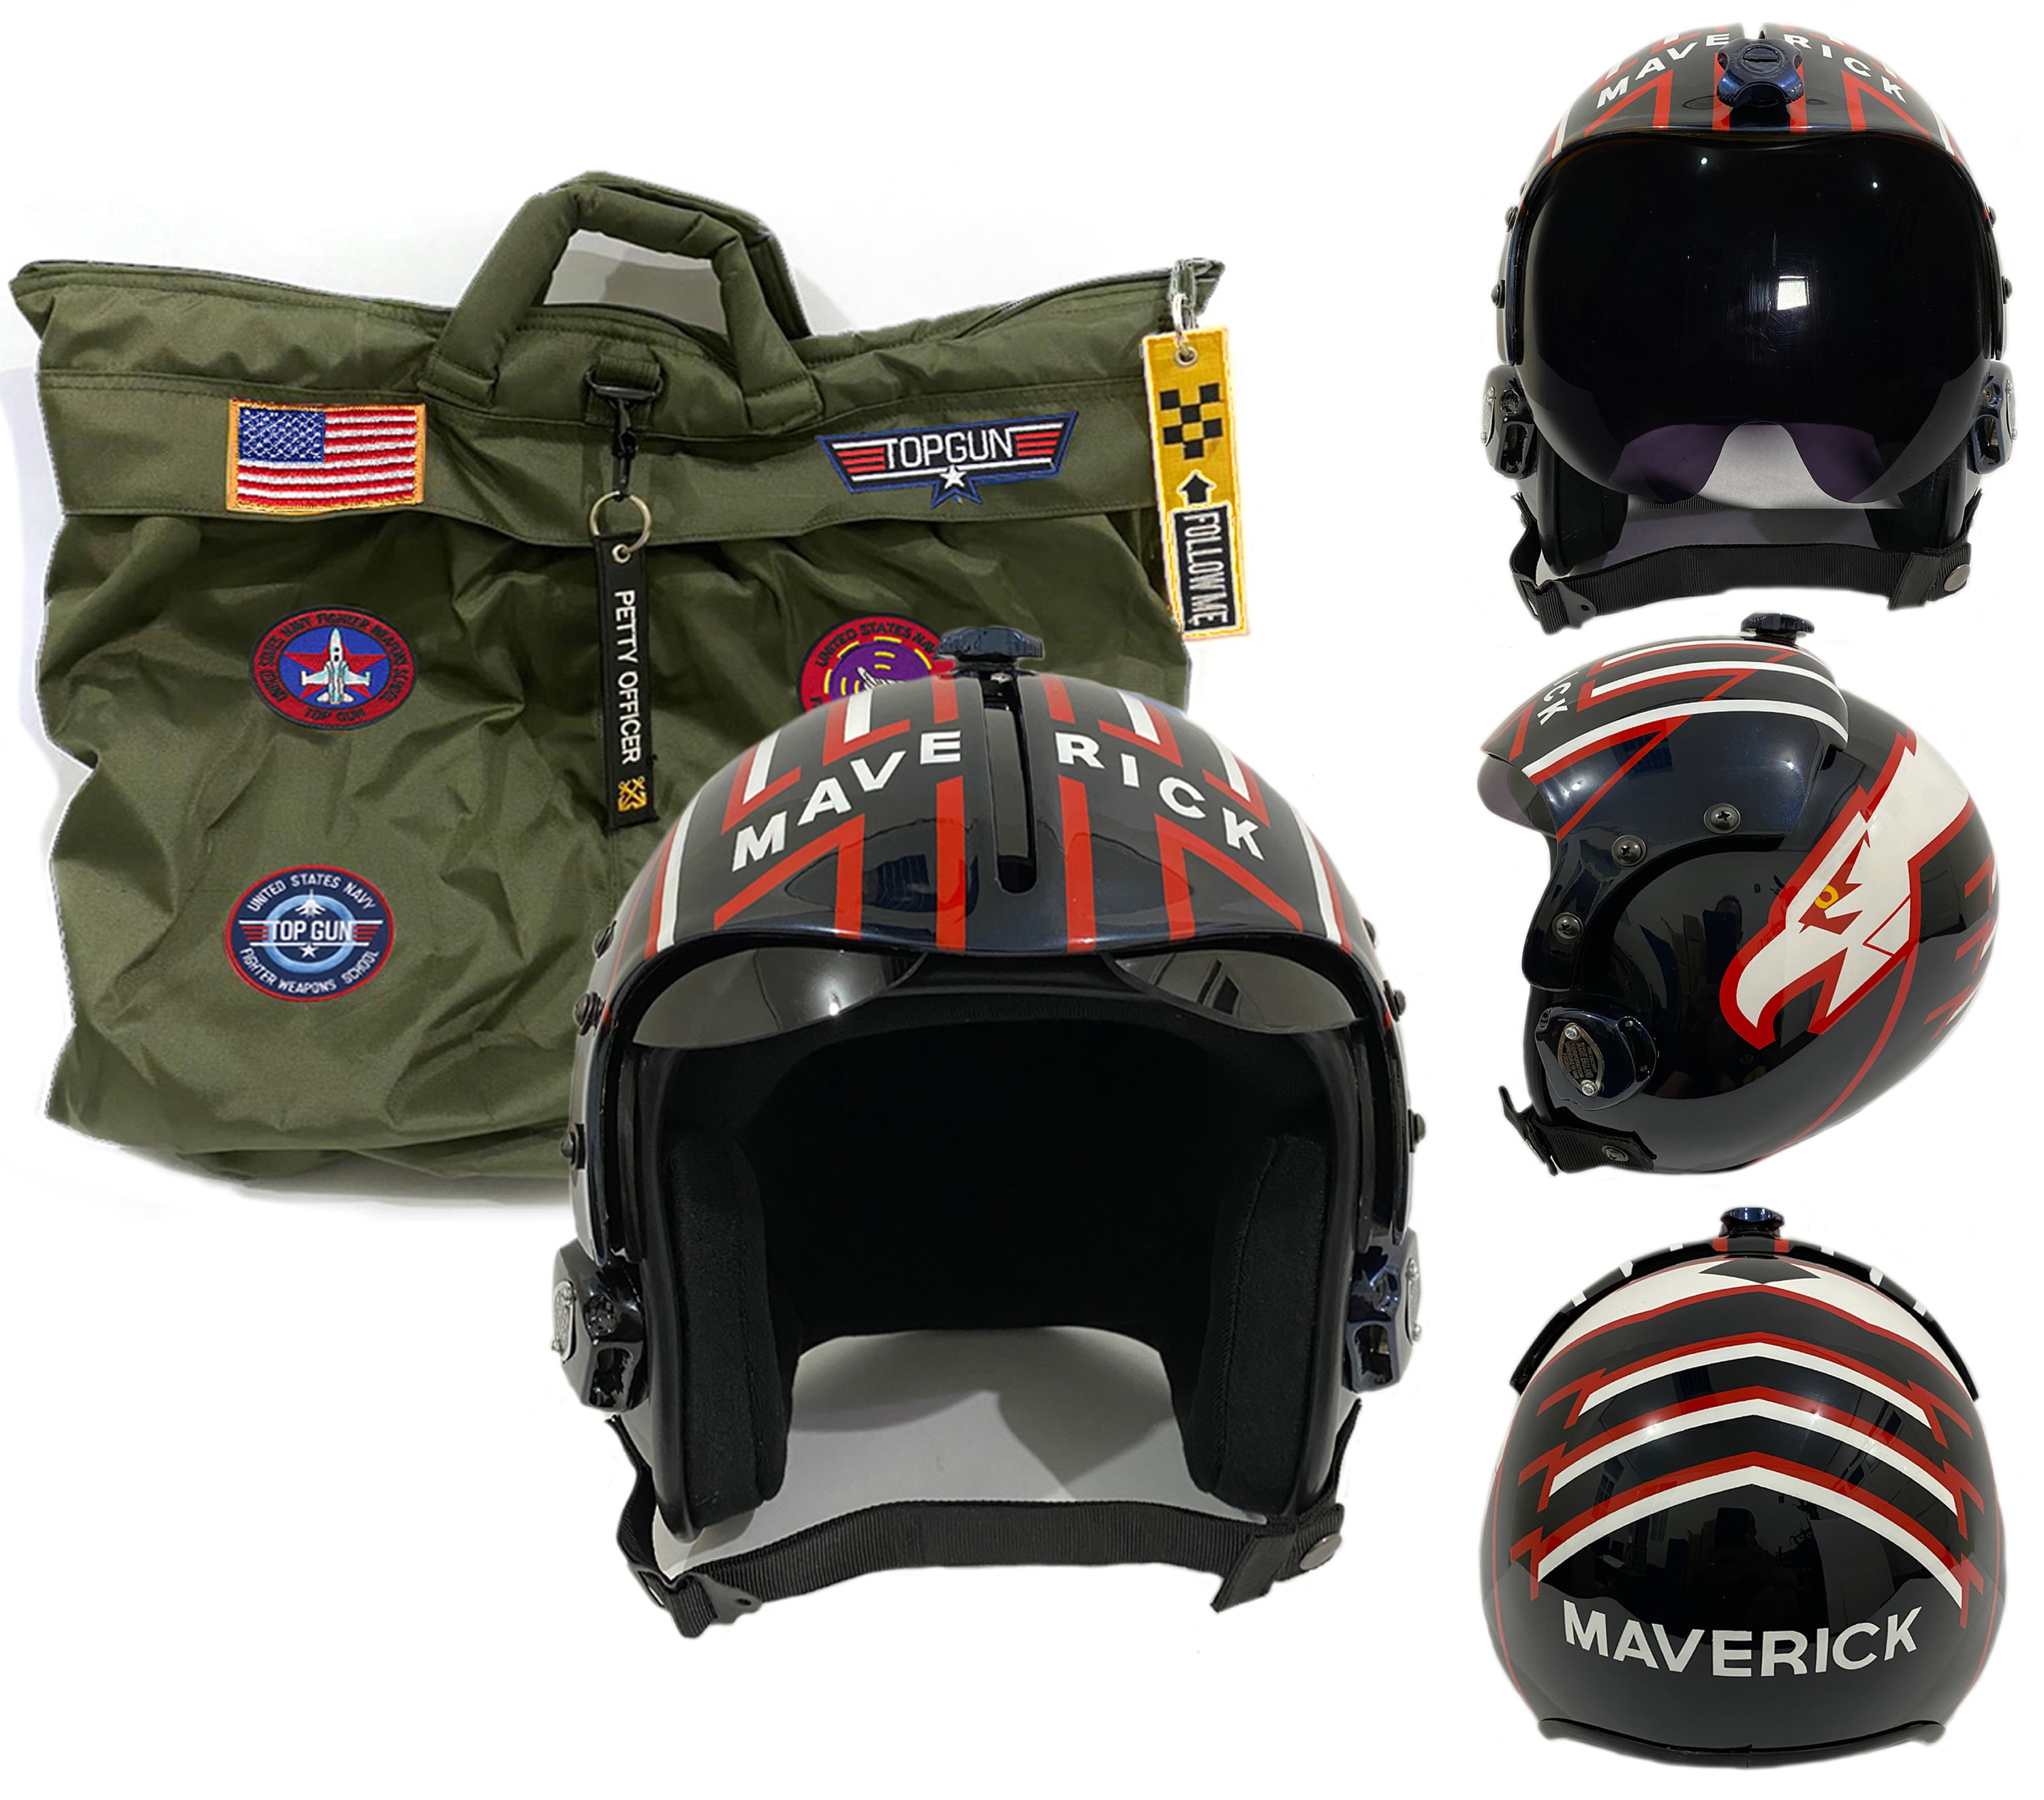 Polyst Fighter Pilot Maverick Helmet From Top Gun Movie Prop Etsy